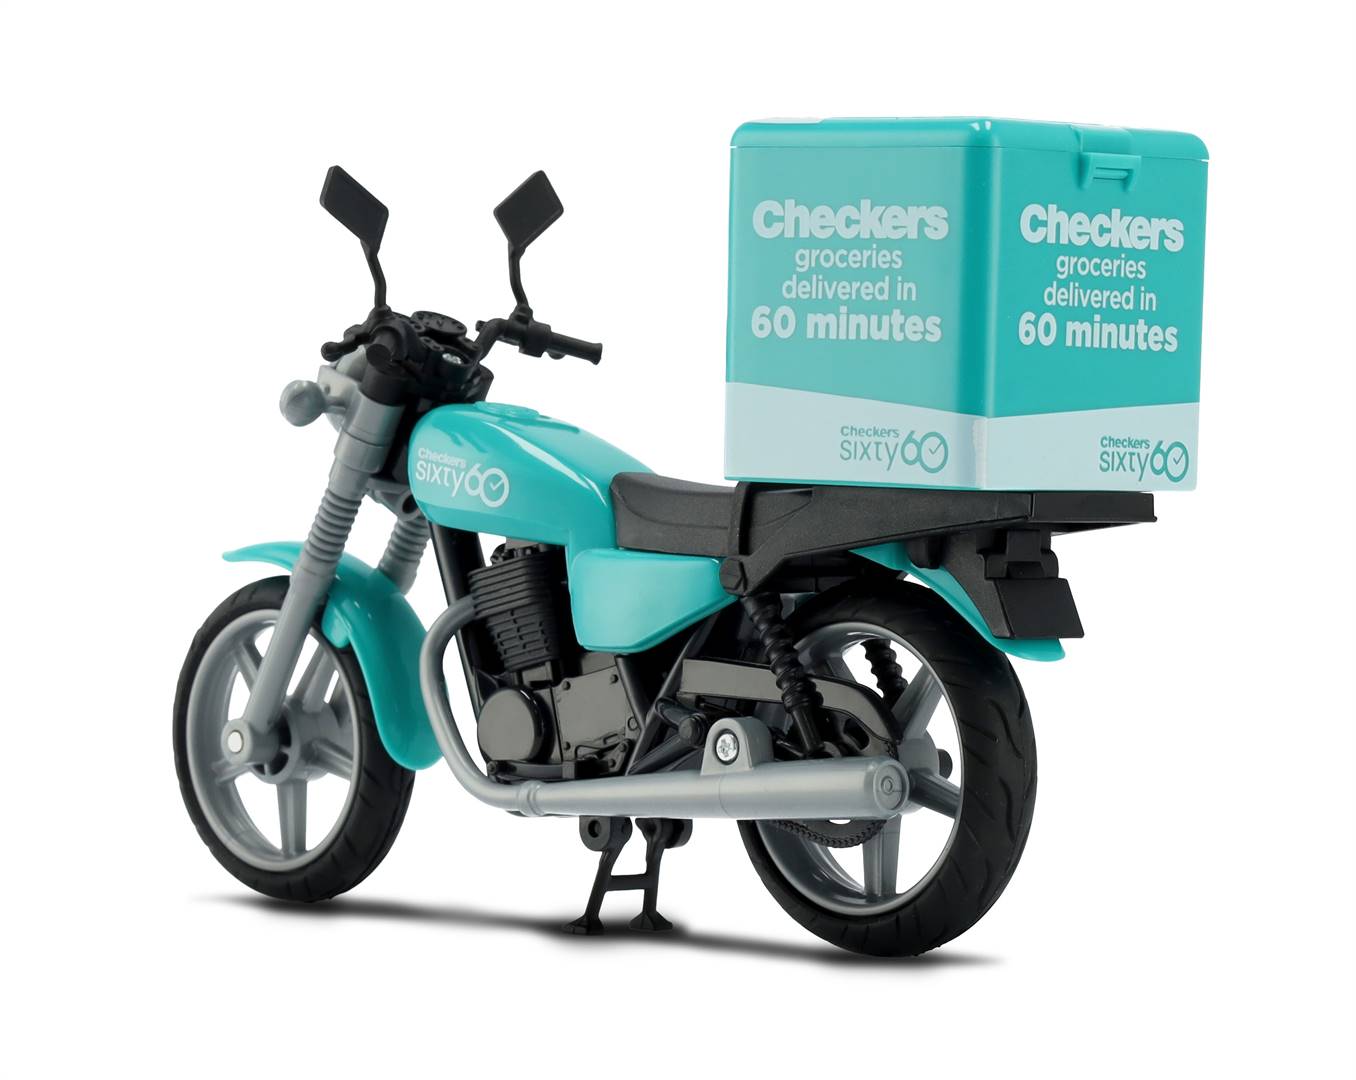 ’n Miniatuur-motorfiets is deel van die nuwe Little Shop-reeks. Dié spesifieke motorfietse is egter afsonderlik te koop teen R100.